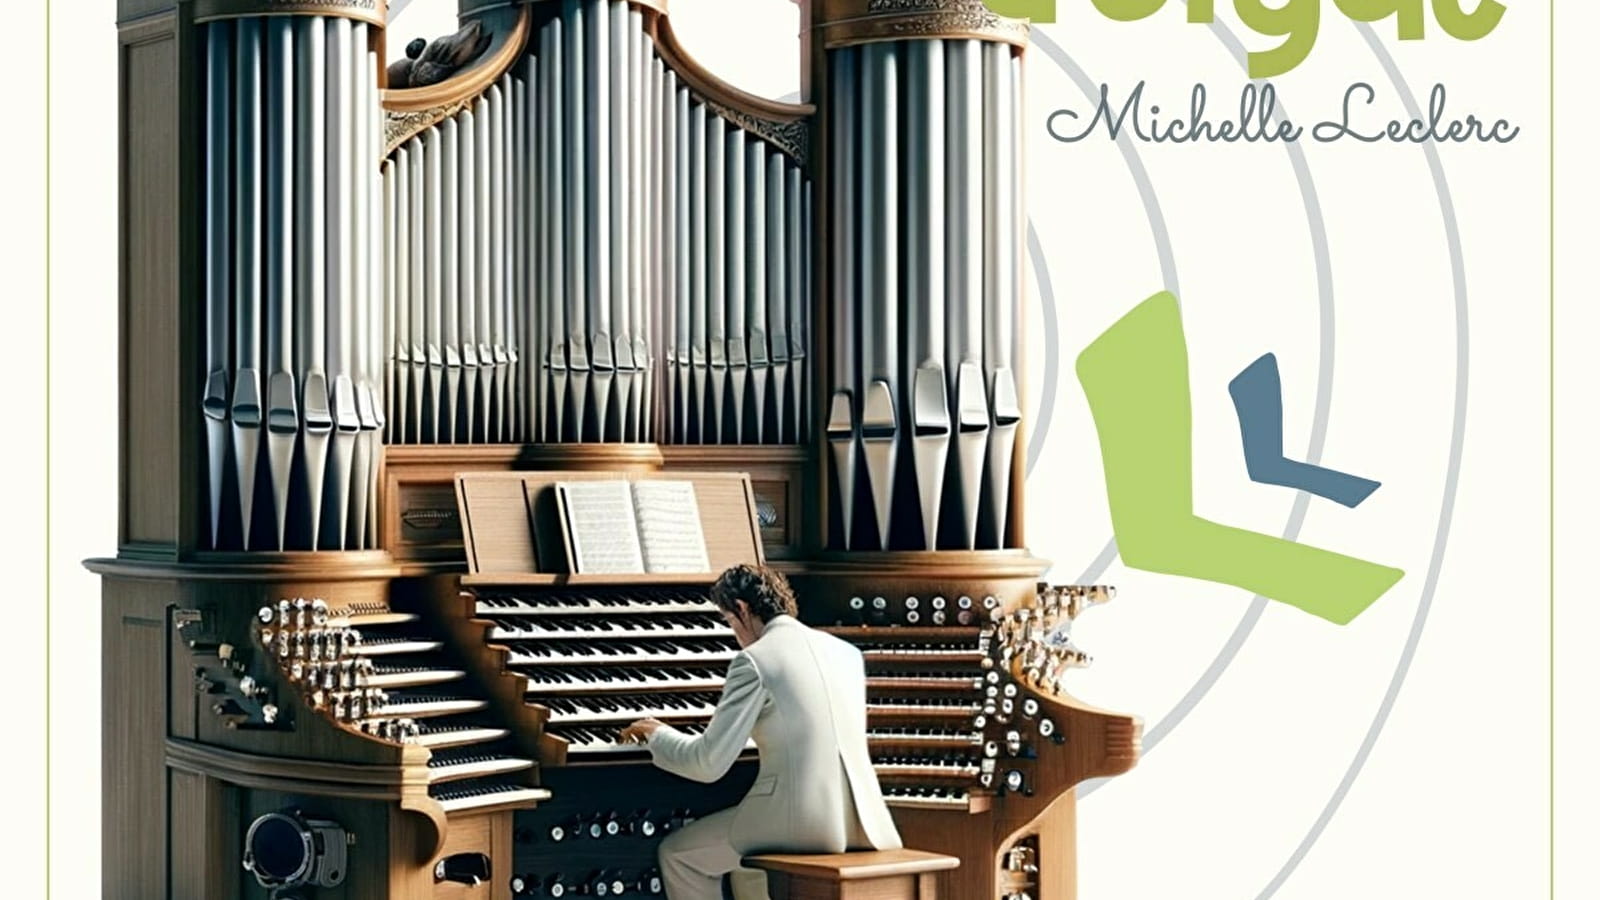 Festival international d'orgue Michelle Leclerc